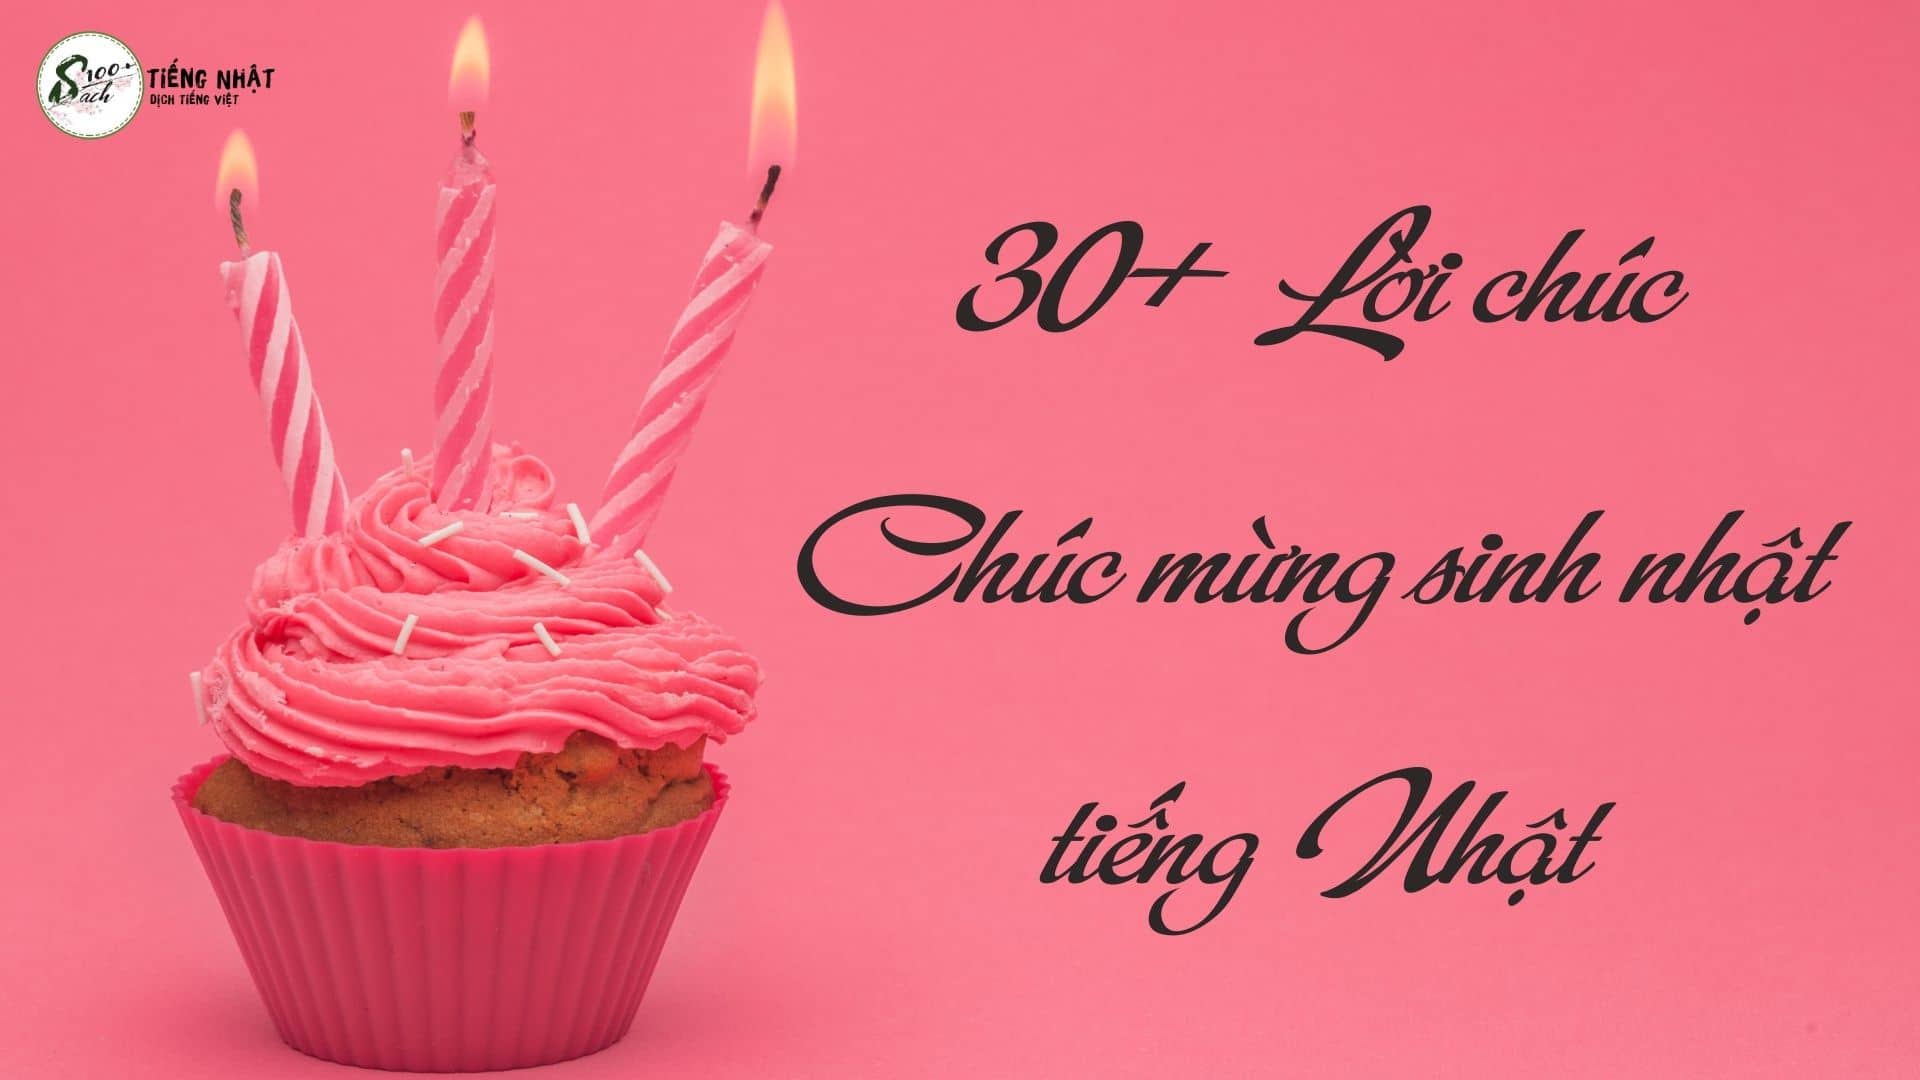 30+ Câu chúc mừng sinh nhật bằng tiếng Nhật dành cho mọi đối tượng ...